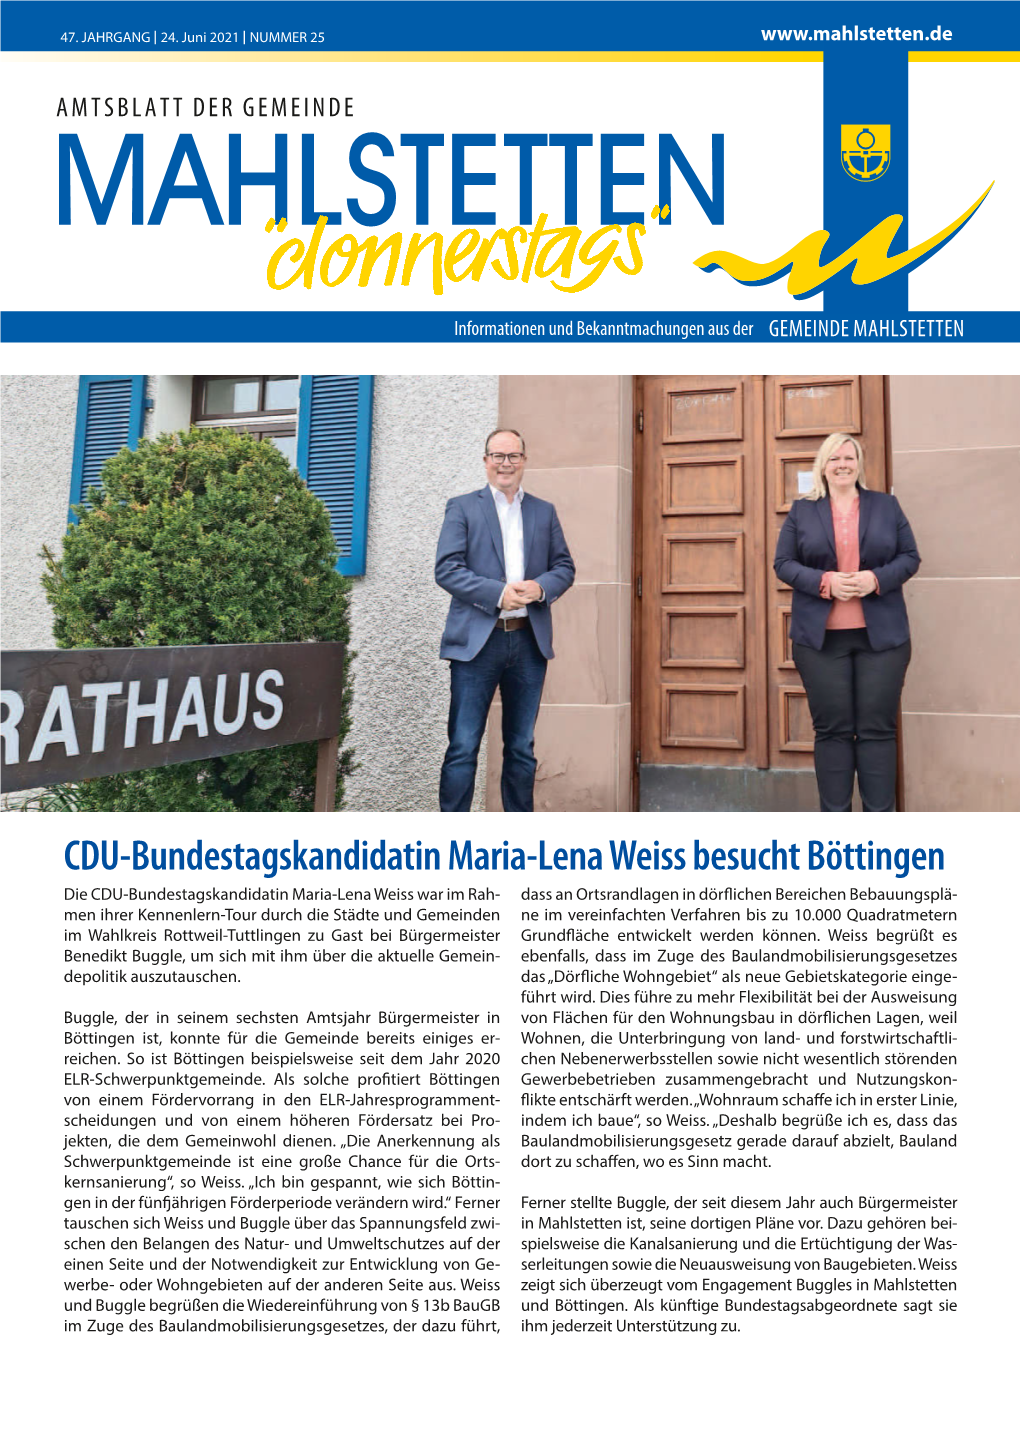 CDU-Bundestagskandidatin Maria-Lena Weiss Besucht Böttingen